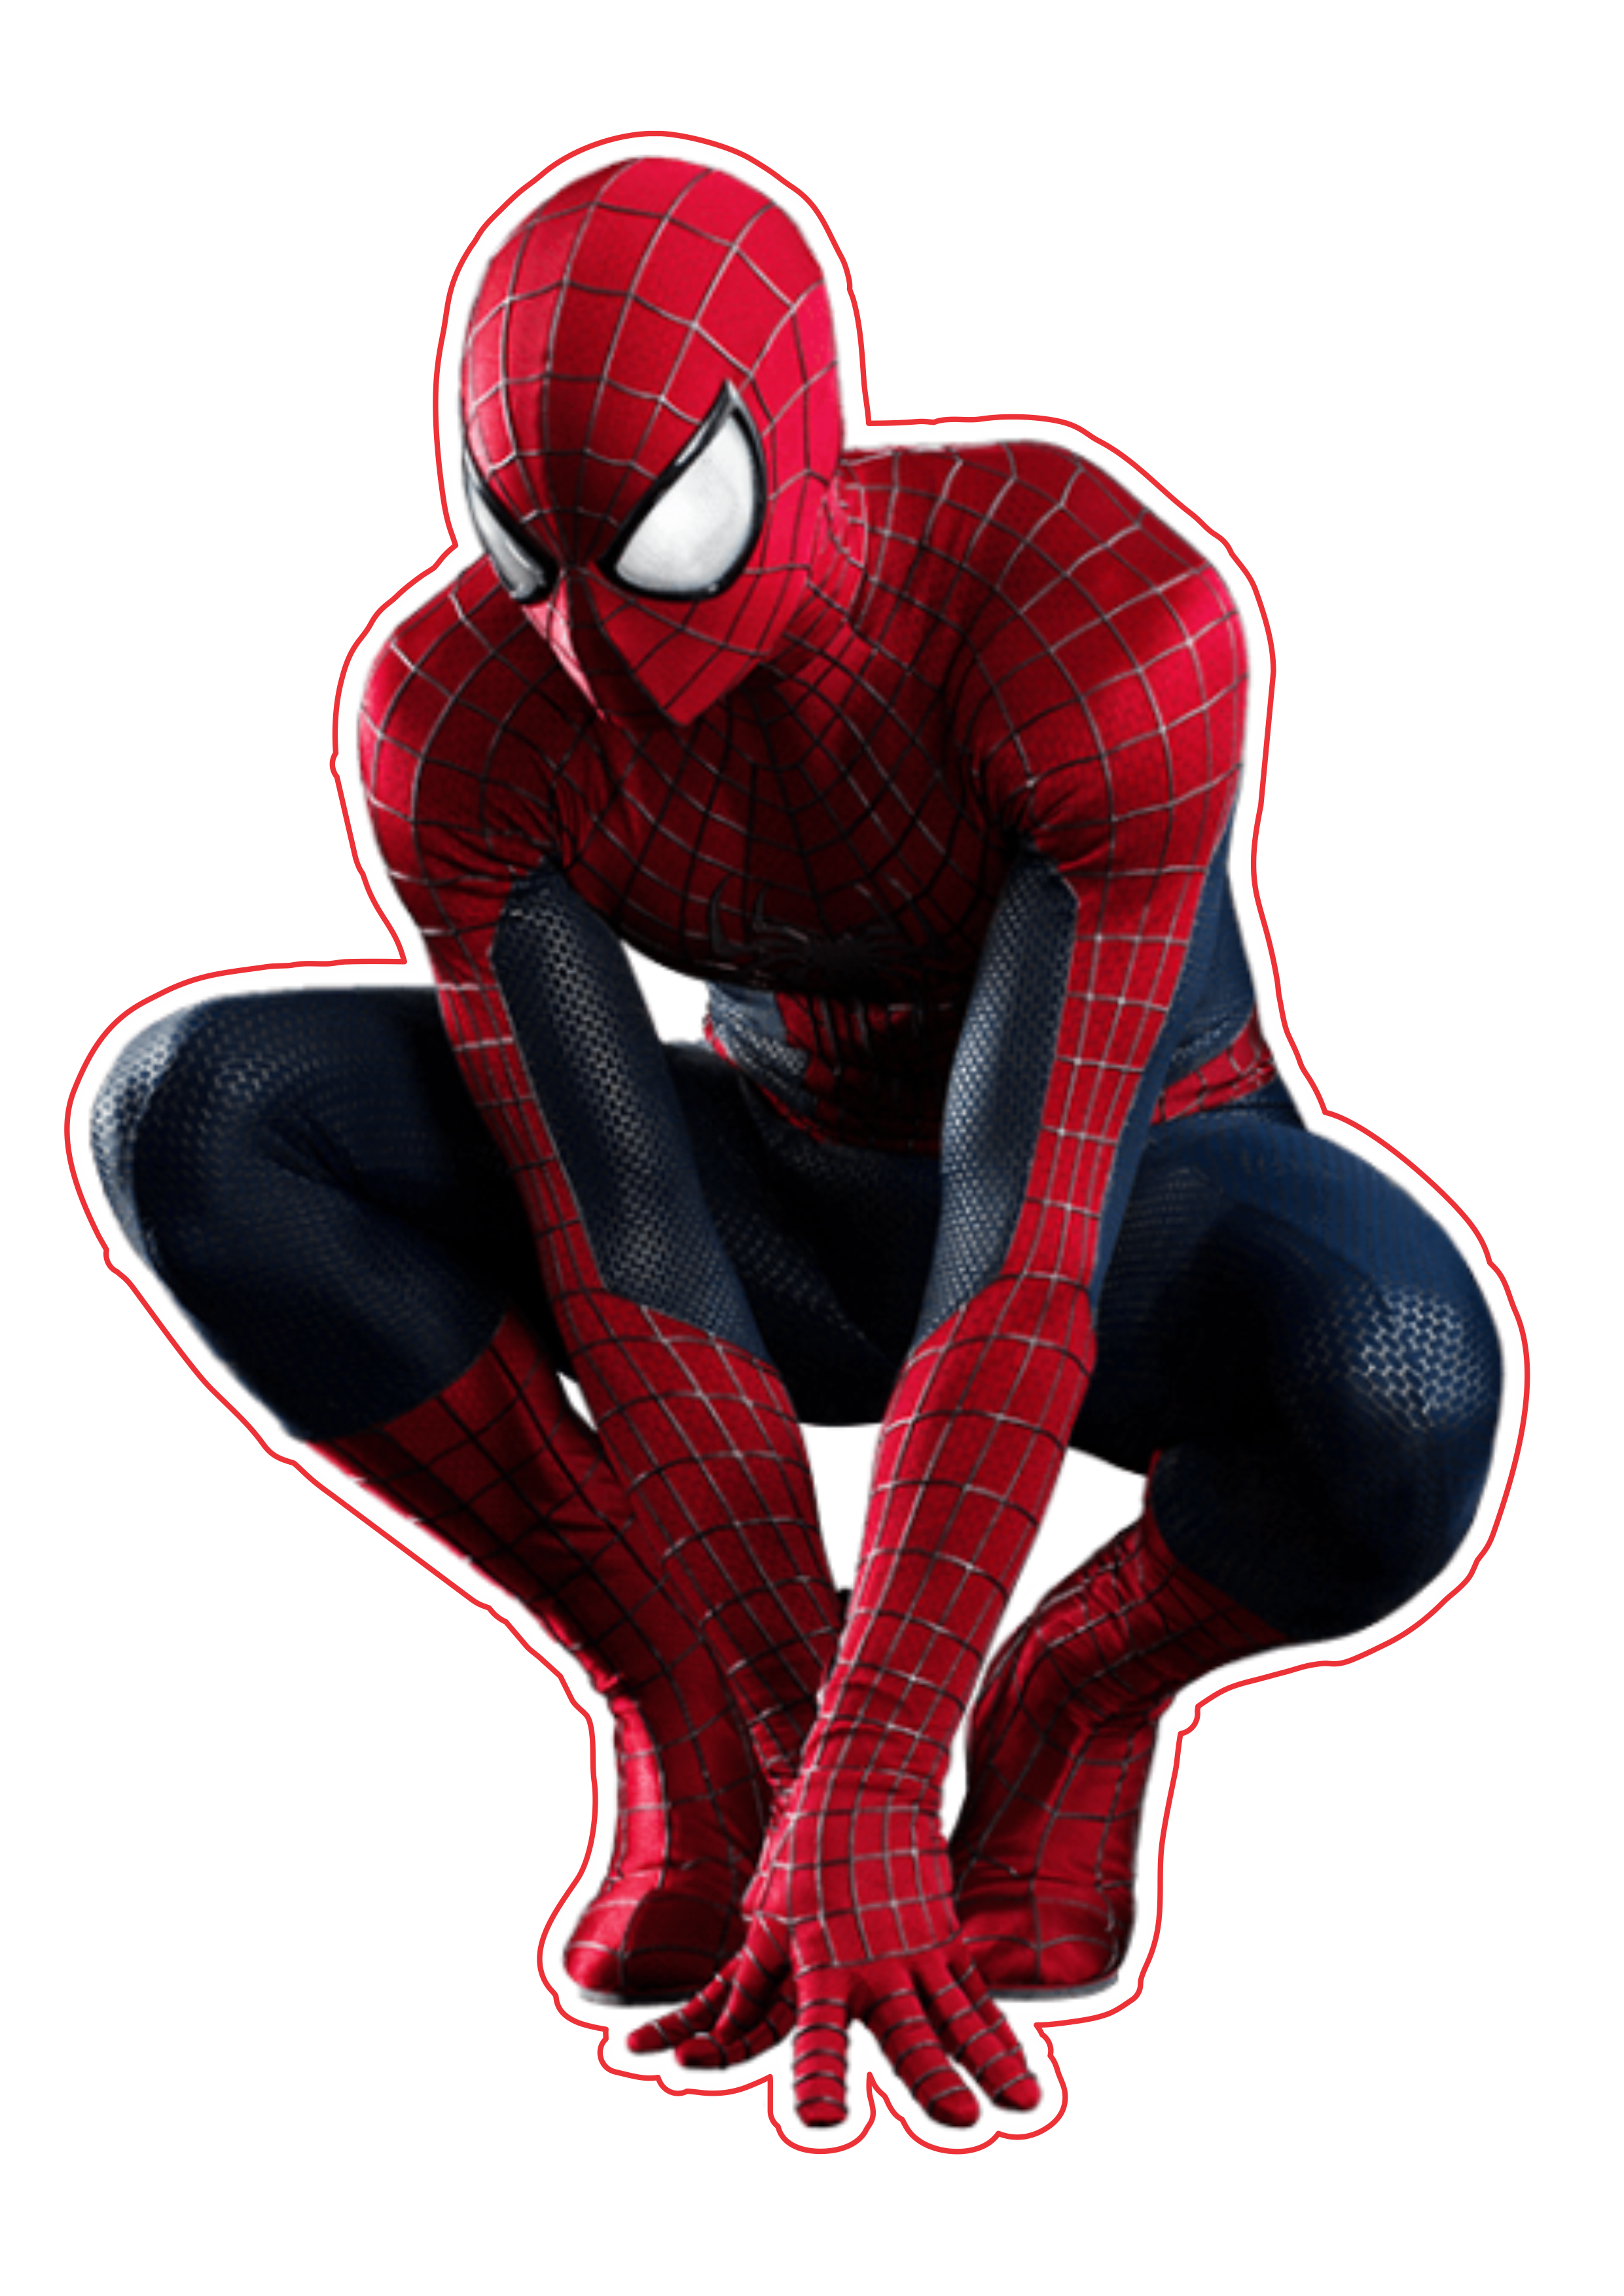 O espetacular homem aranha amazing spider man desenho fundo transparente  imagem png